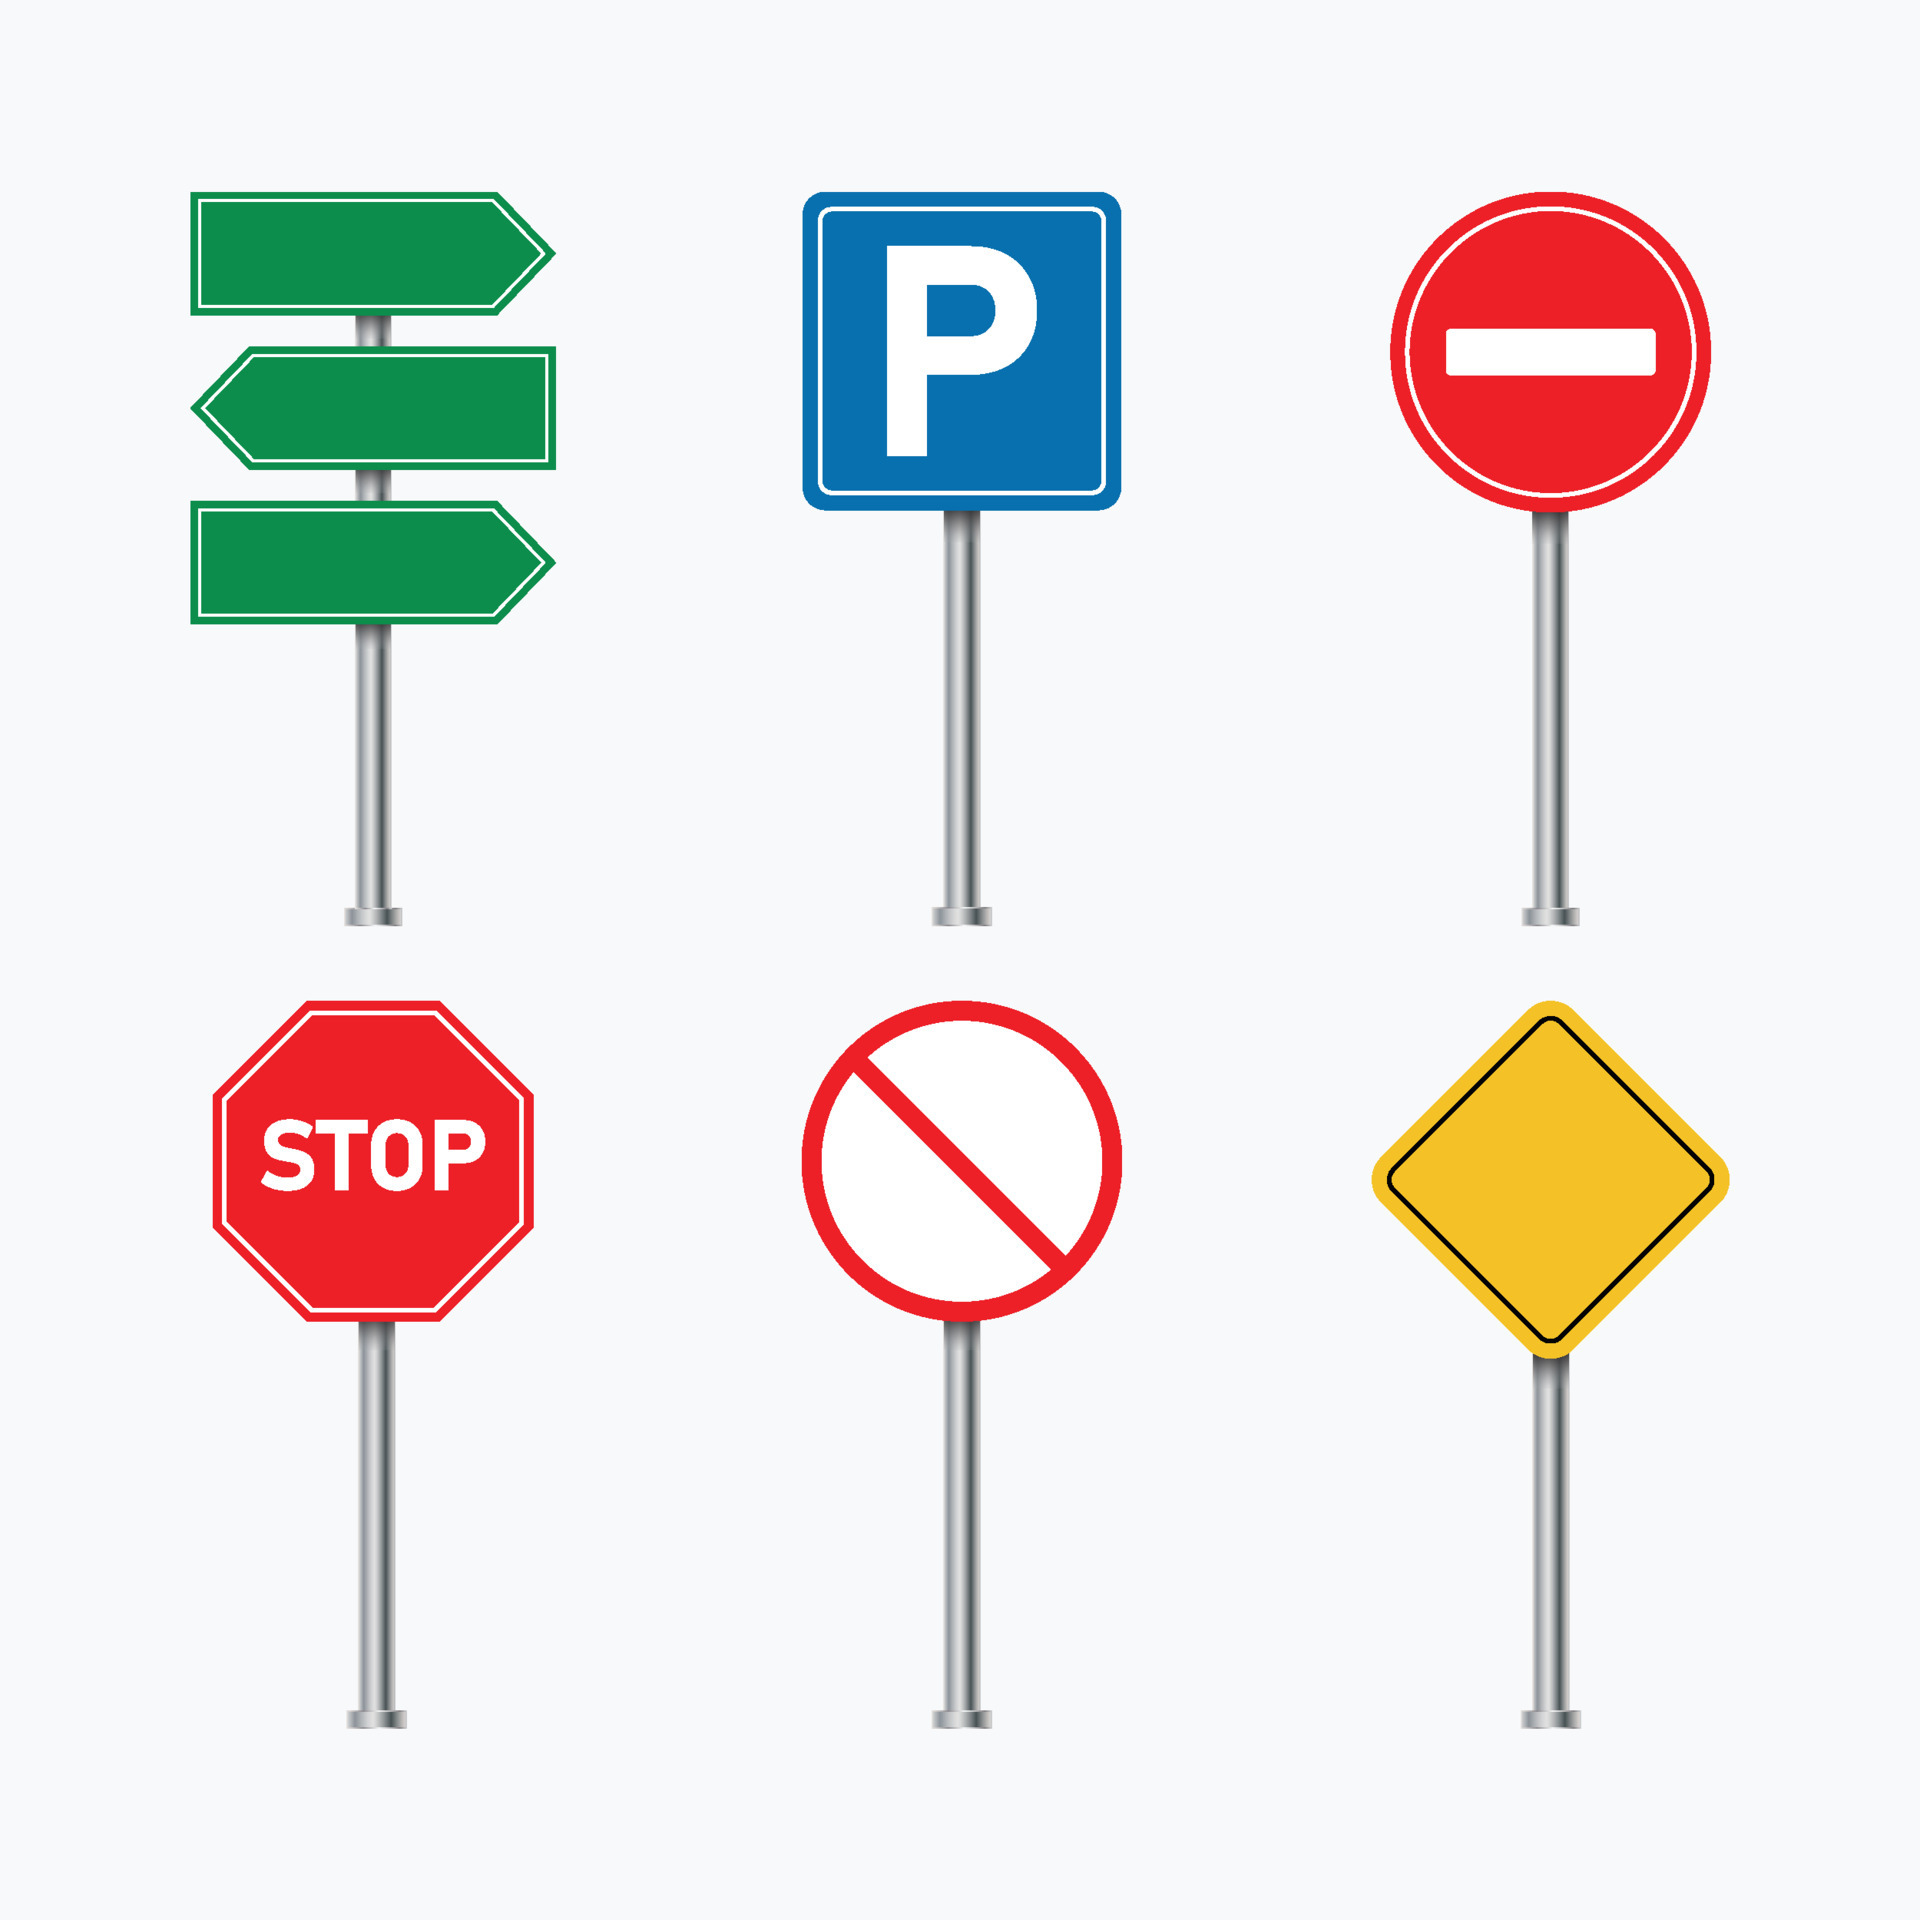 Biển báo giao thông xanh trên nền xanh lá cây - sắc xanh là màu sắc của sự an toàn và bình yên. Hãy tìm hiểu các biển báo này để tránh các rủi ro và tạo ra một môi trường giao thông tốt đẹp và an toàn.